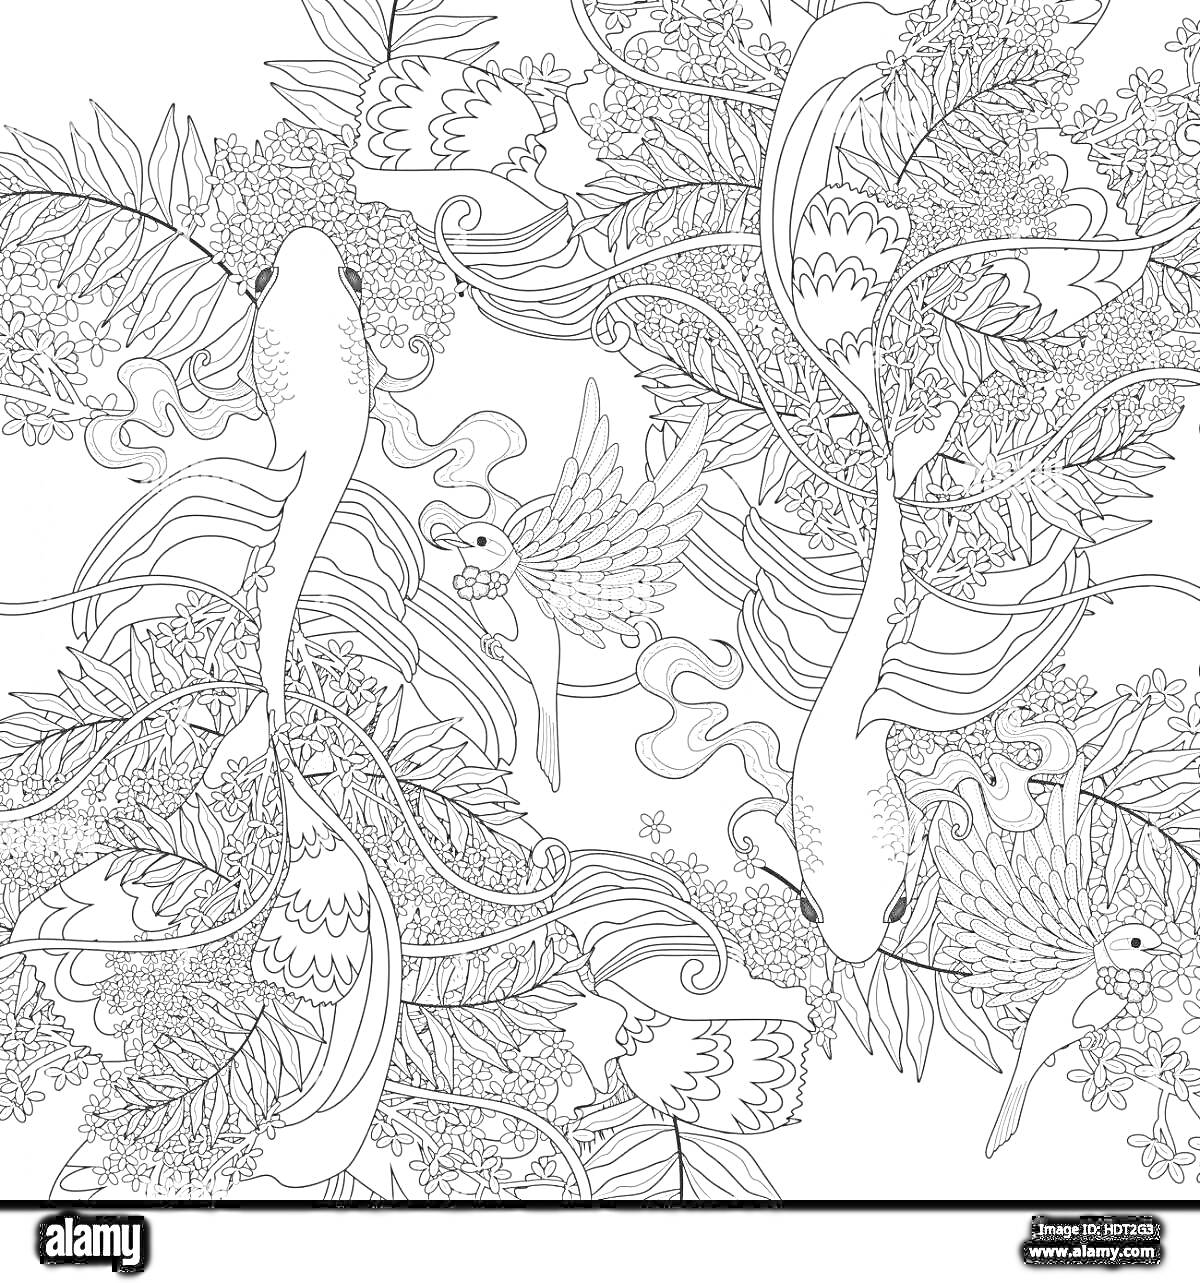 Раскраска Рыбы кои, листья, водные растения и узорчатый фон